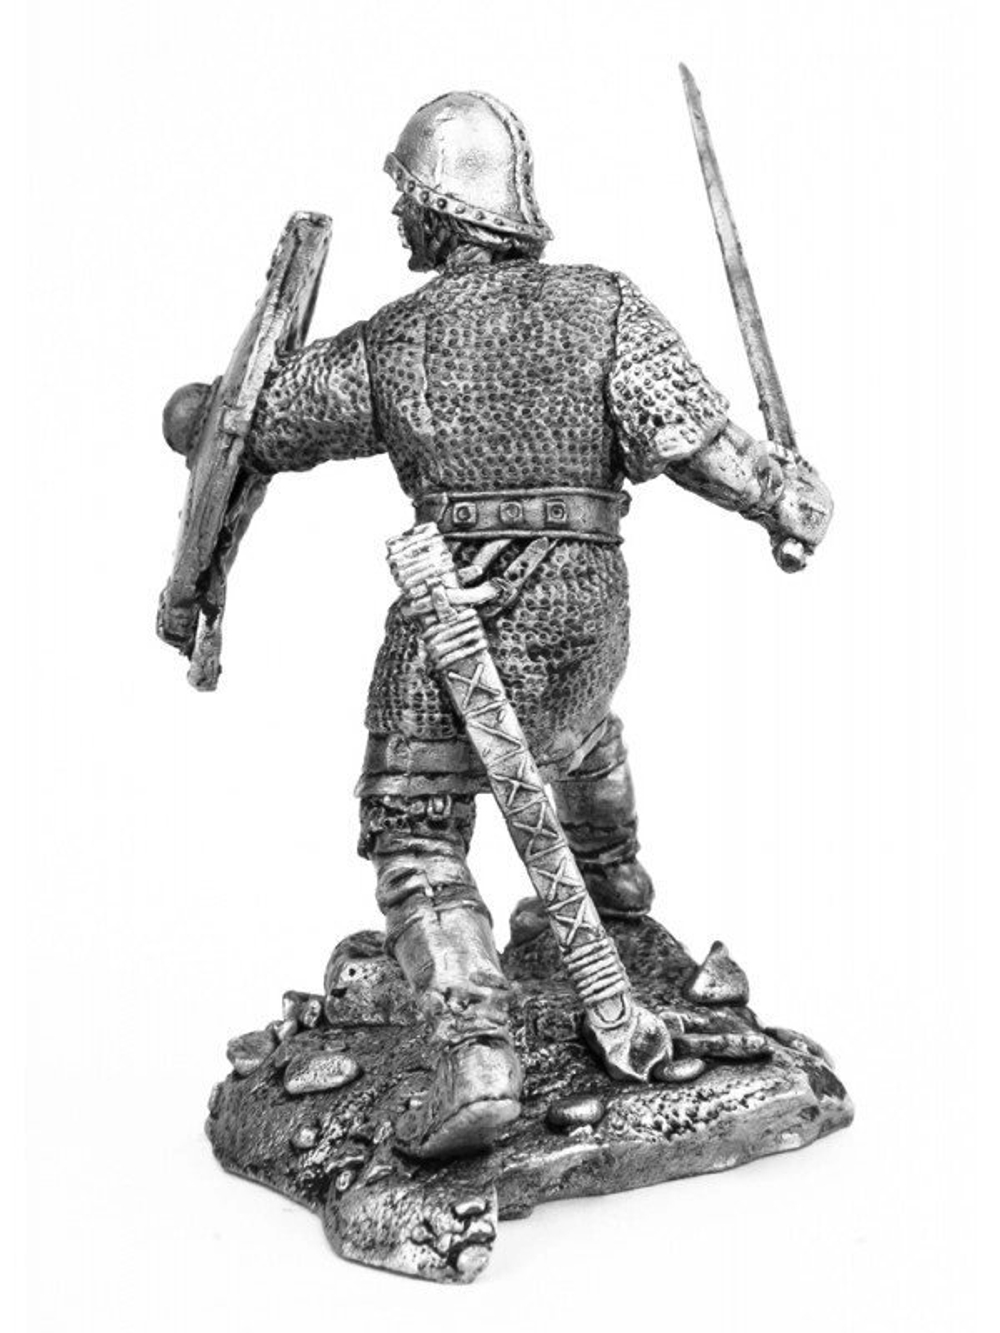 Оловянный солдатик Воин Роланда 1, около 800 г.